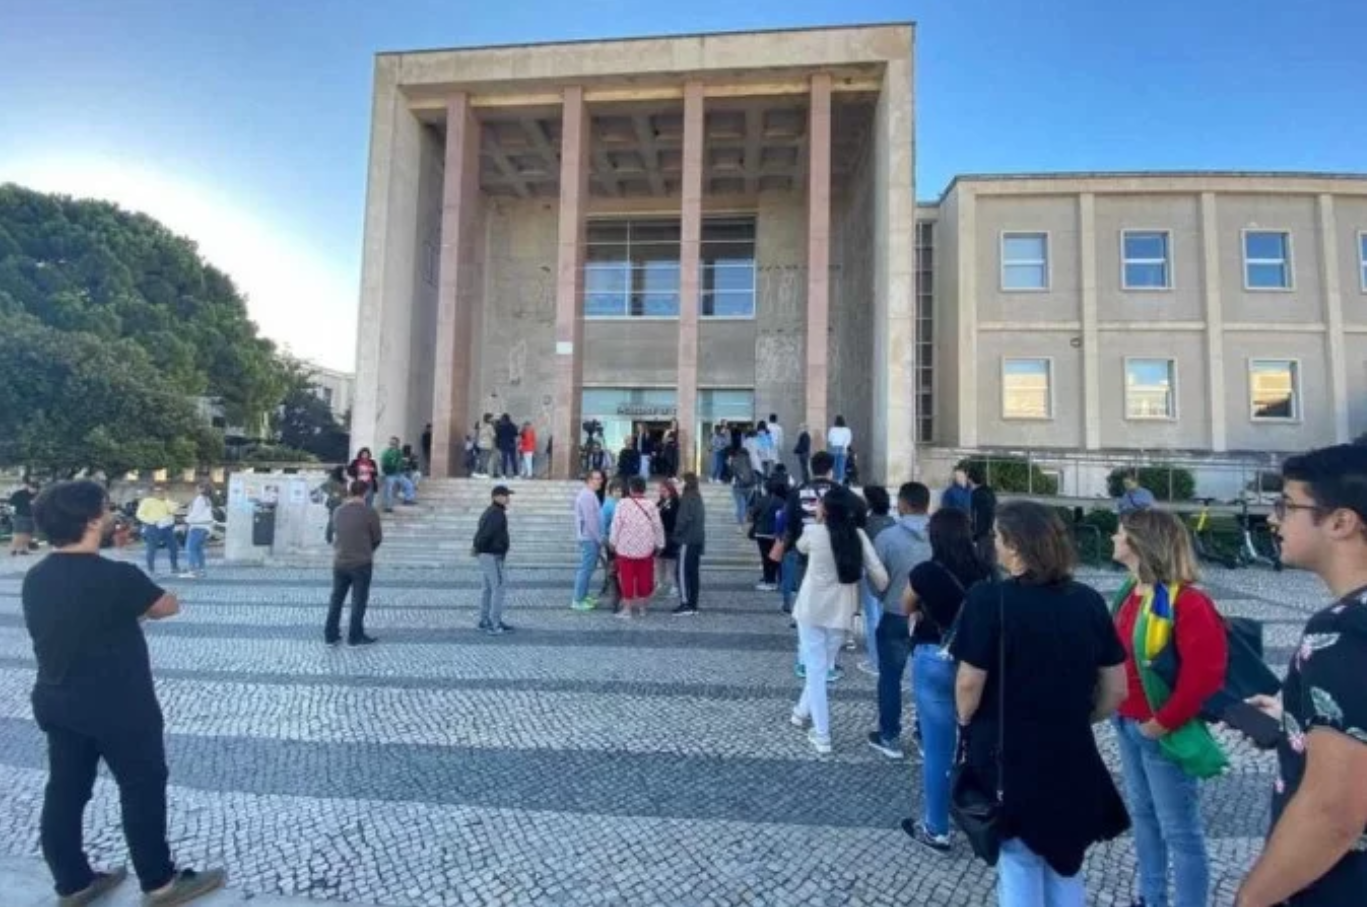 Faculdade de Direito da Universidade de Lisboa, seção eleitoral em Portugal